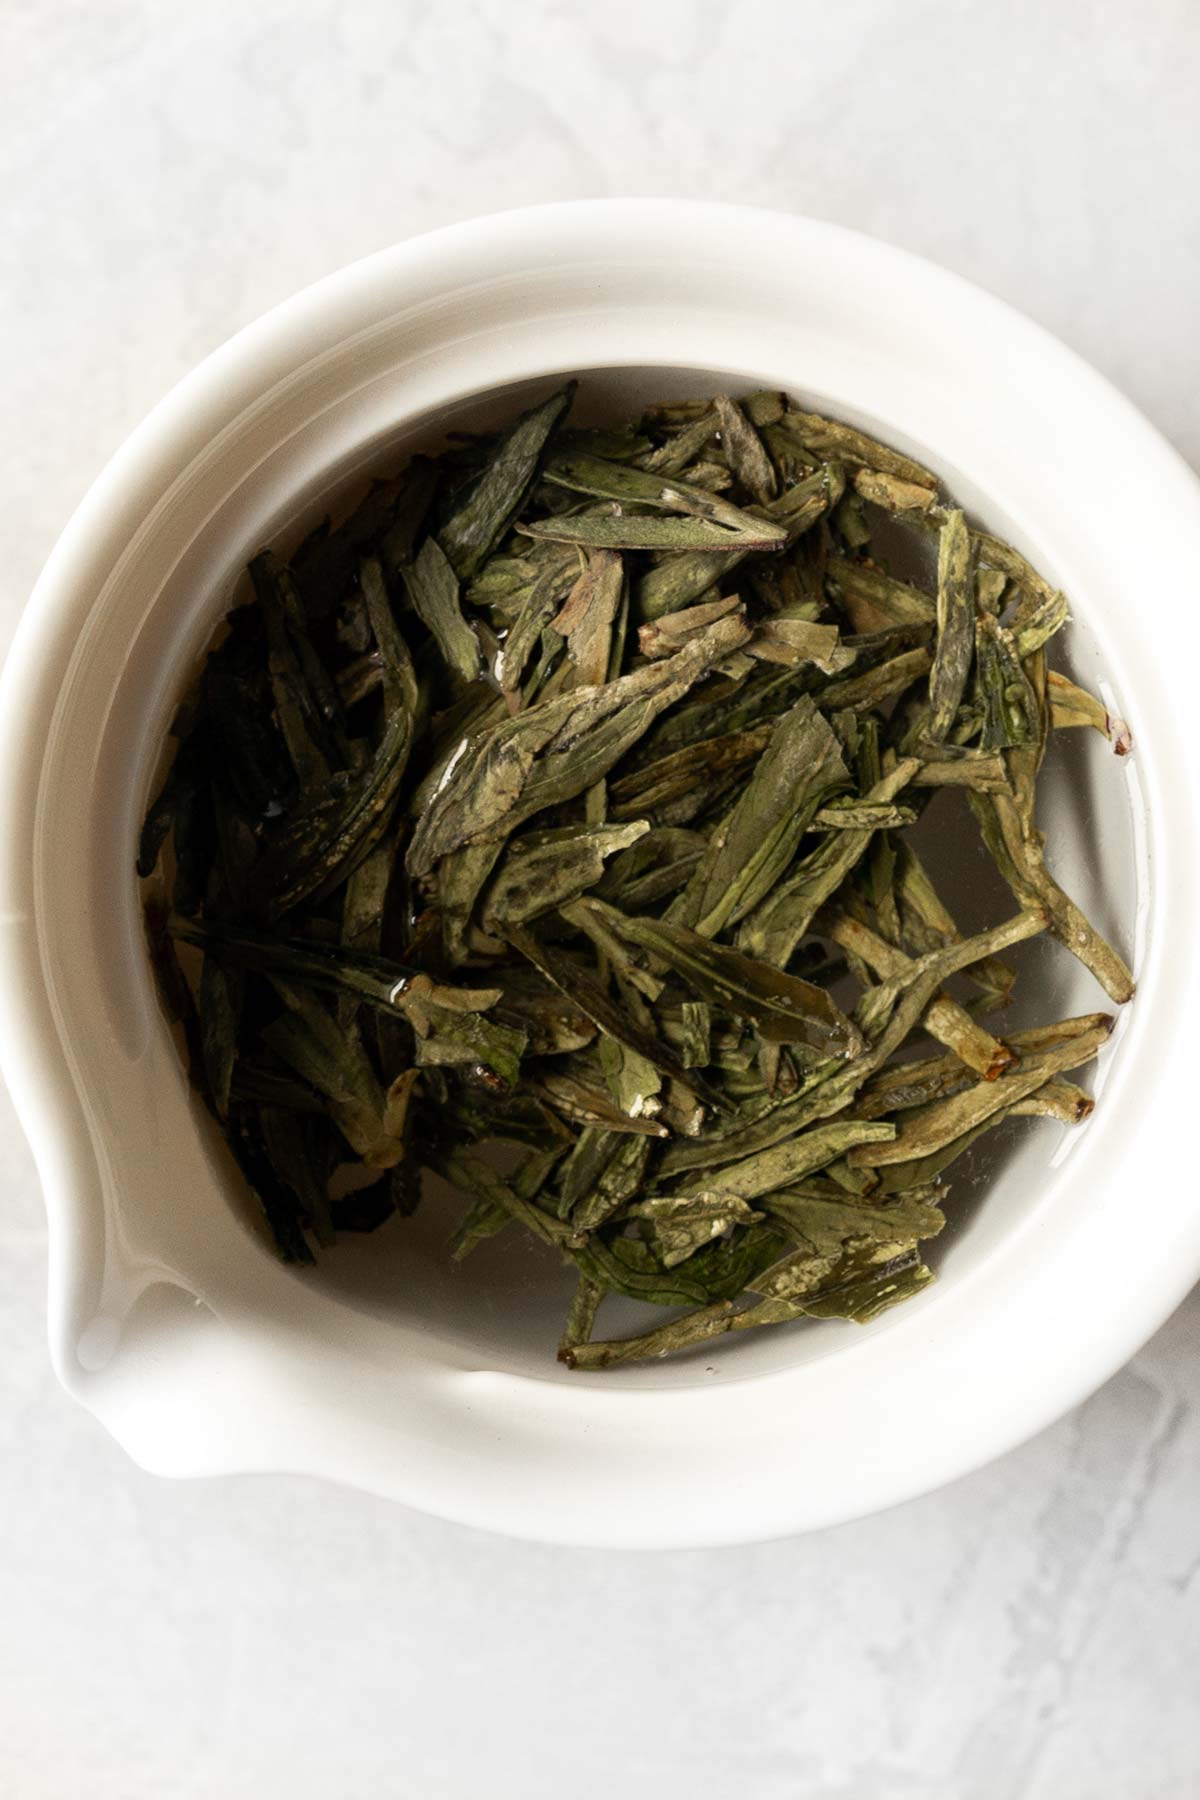 Green tea in a white gaiwan.